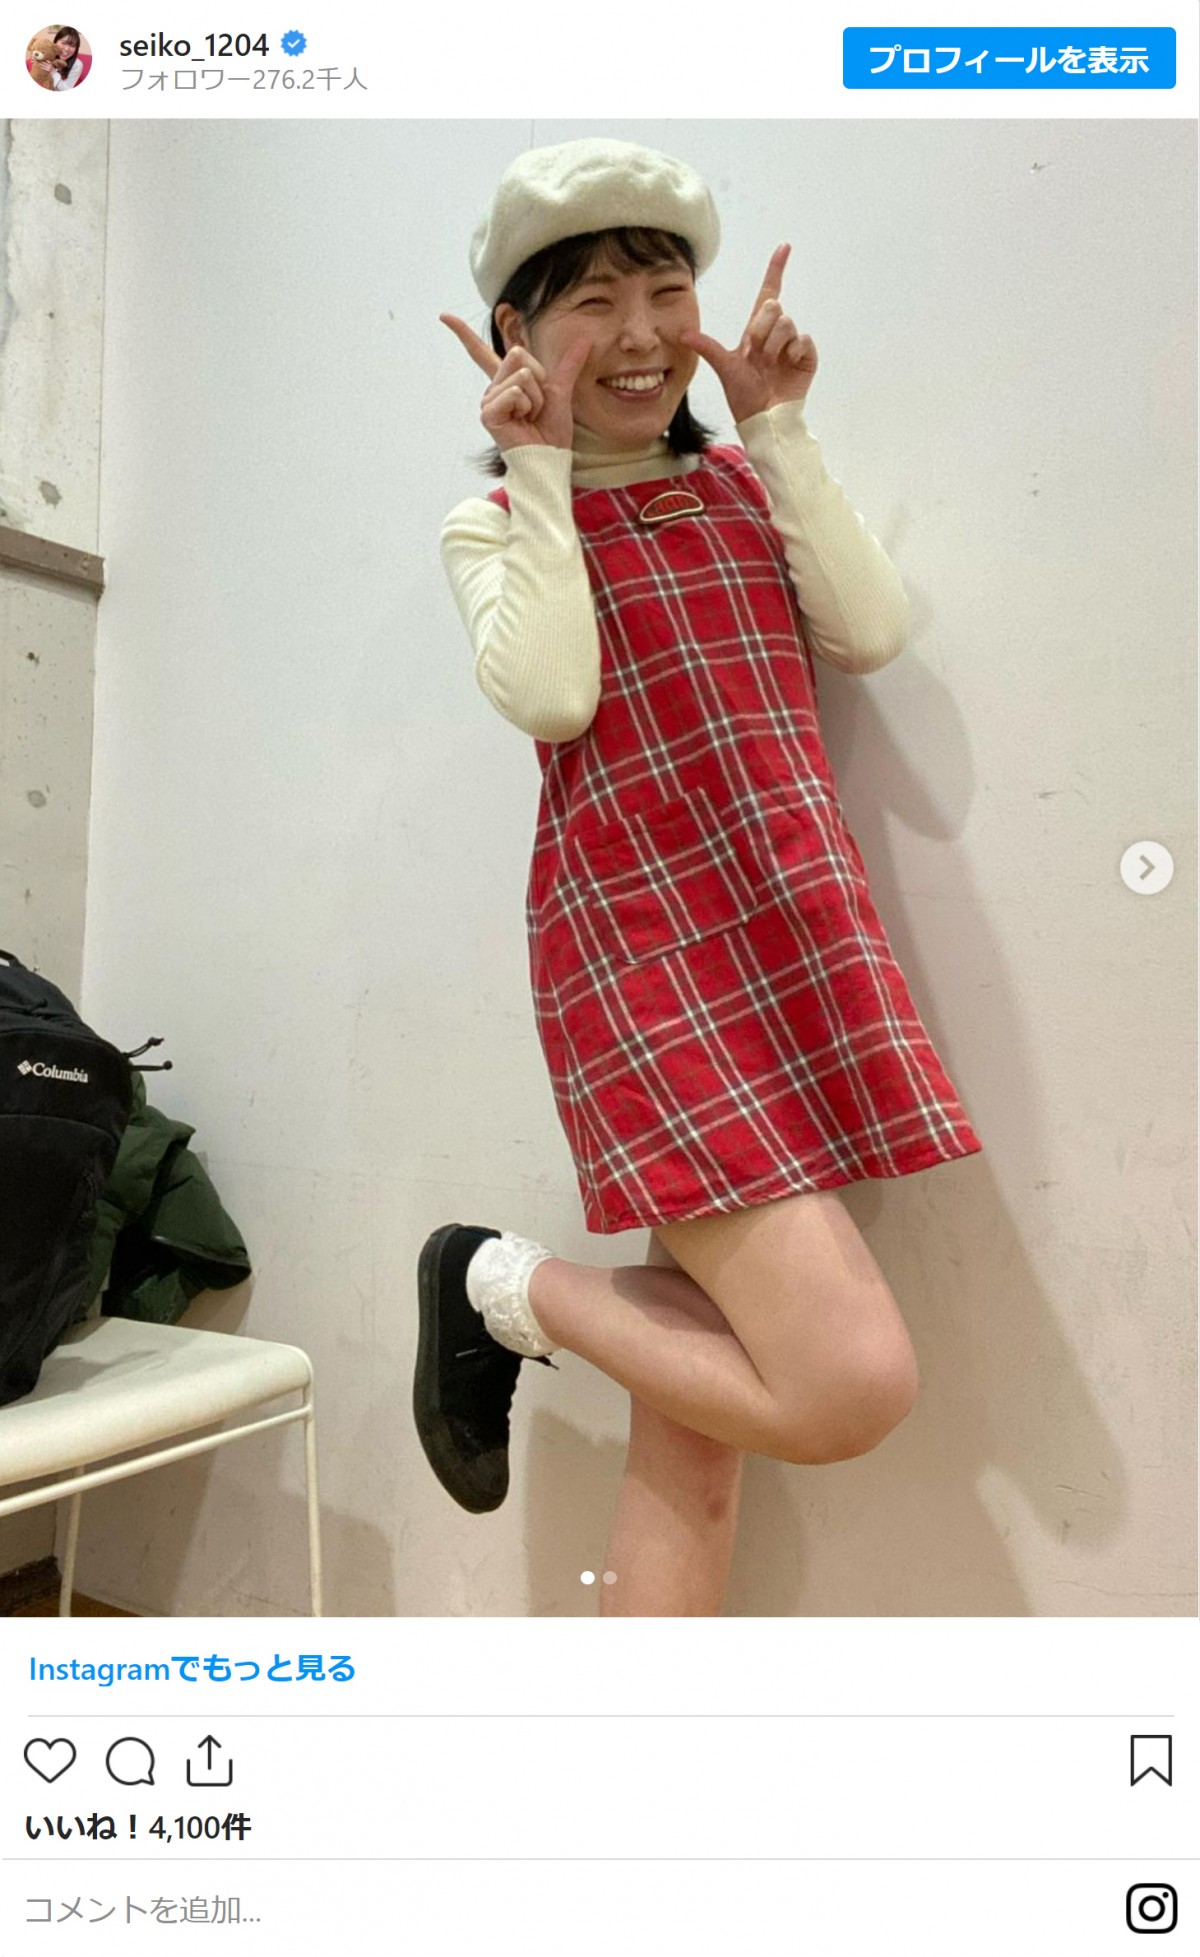 尼神インター・誠子のアイドル風スマイル＆衣装に反響　「めっちゃ可愛い」「美脚」